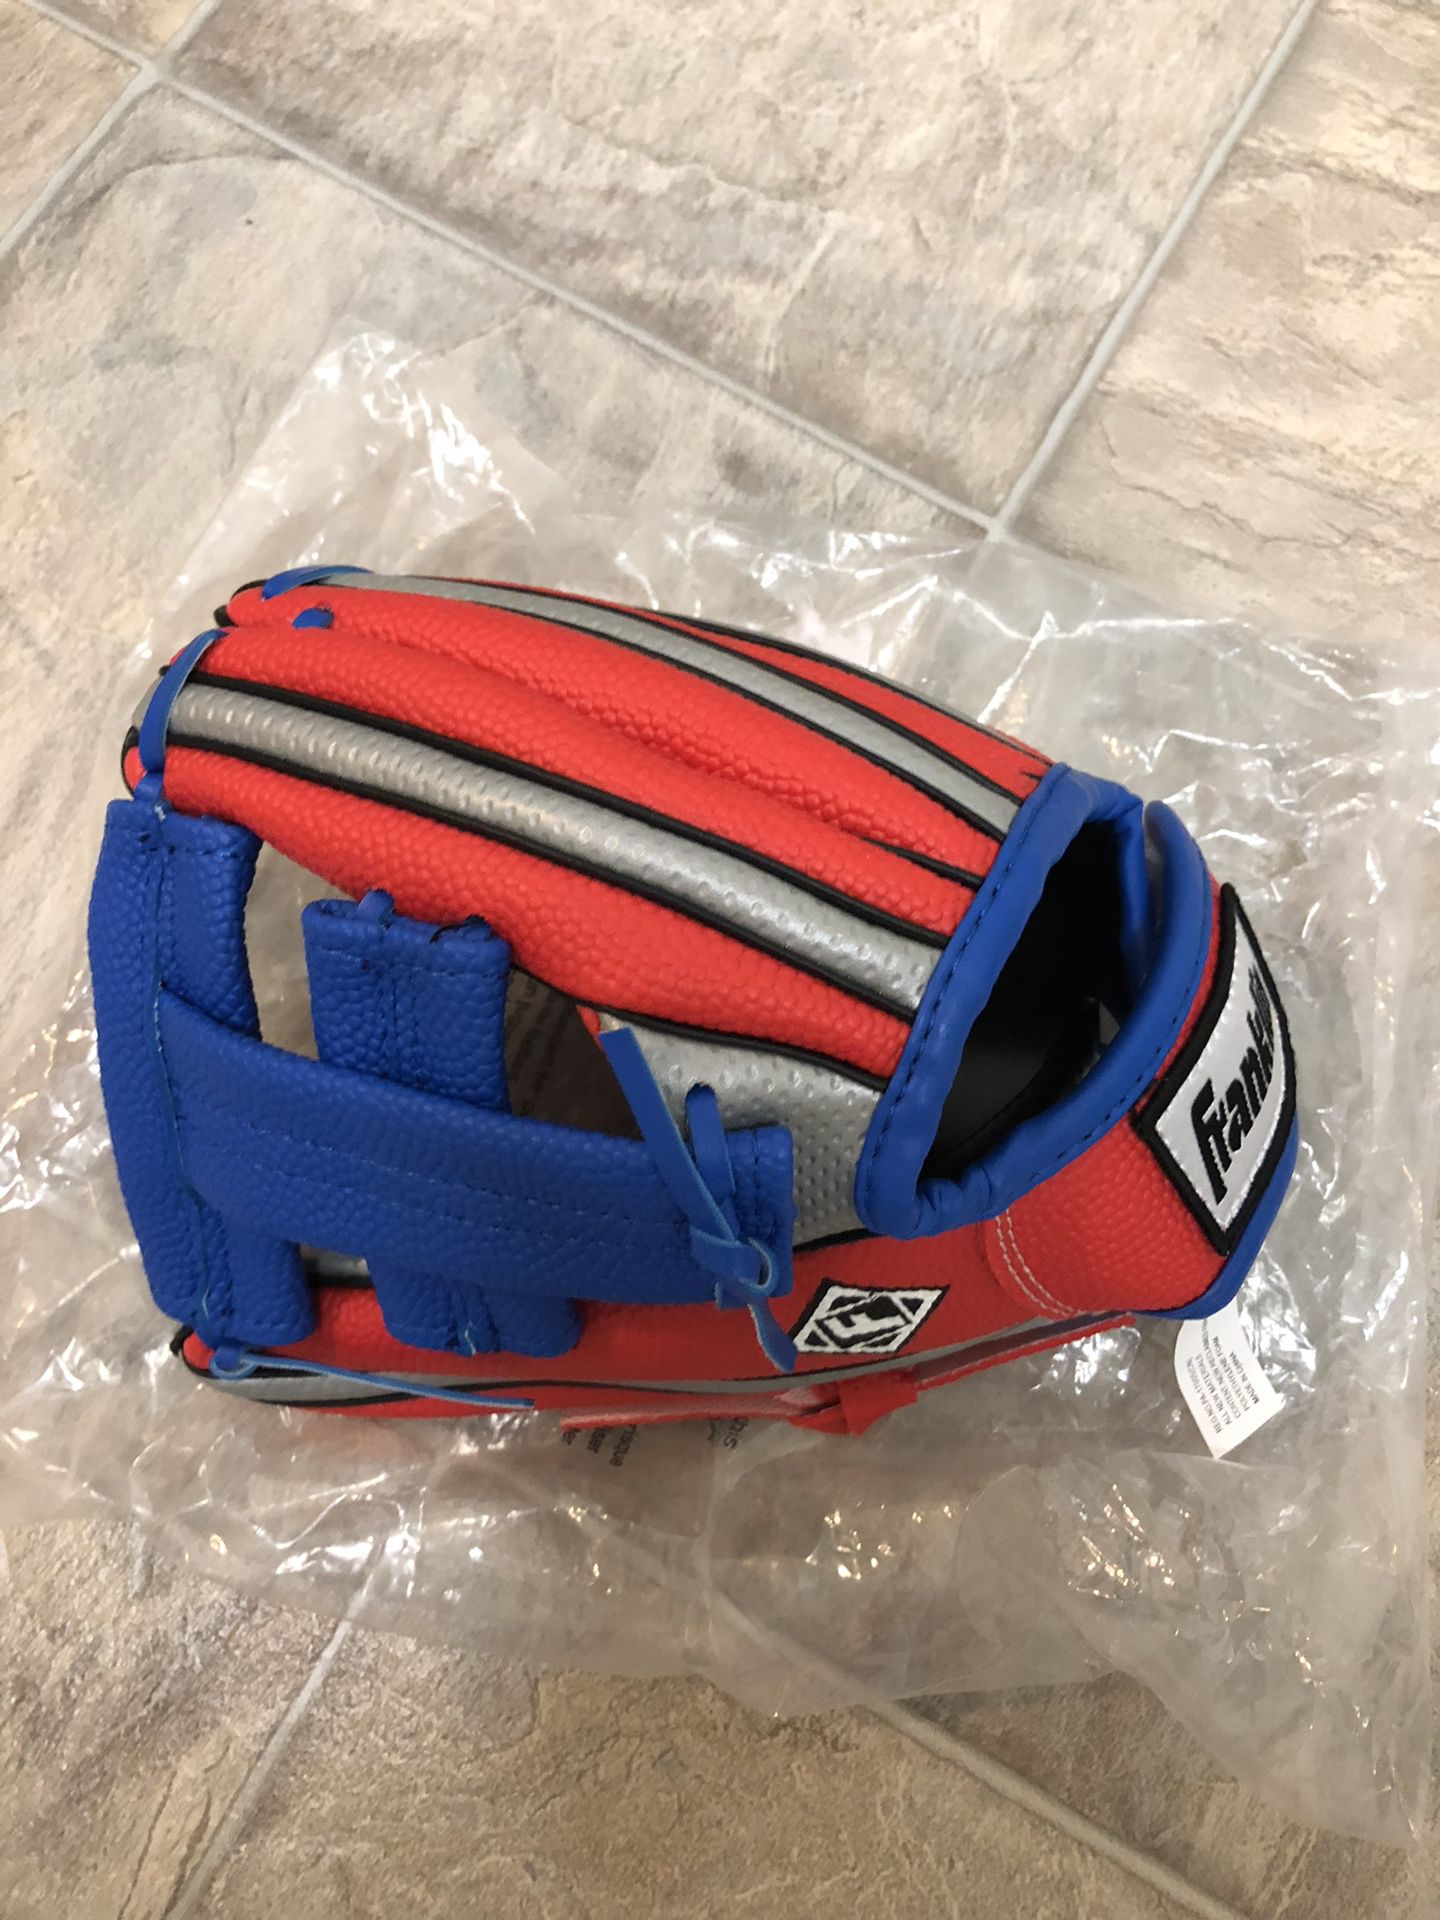 Franklin sport air tech 9” baseball gloves for kids